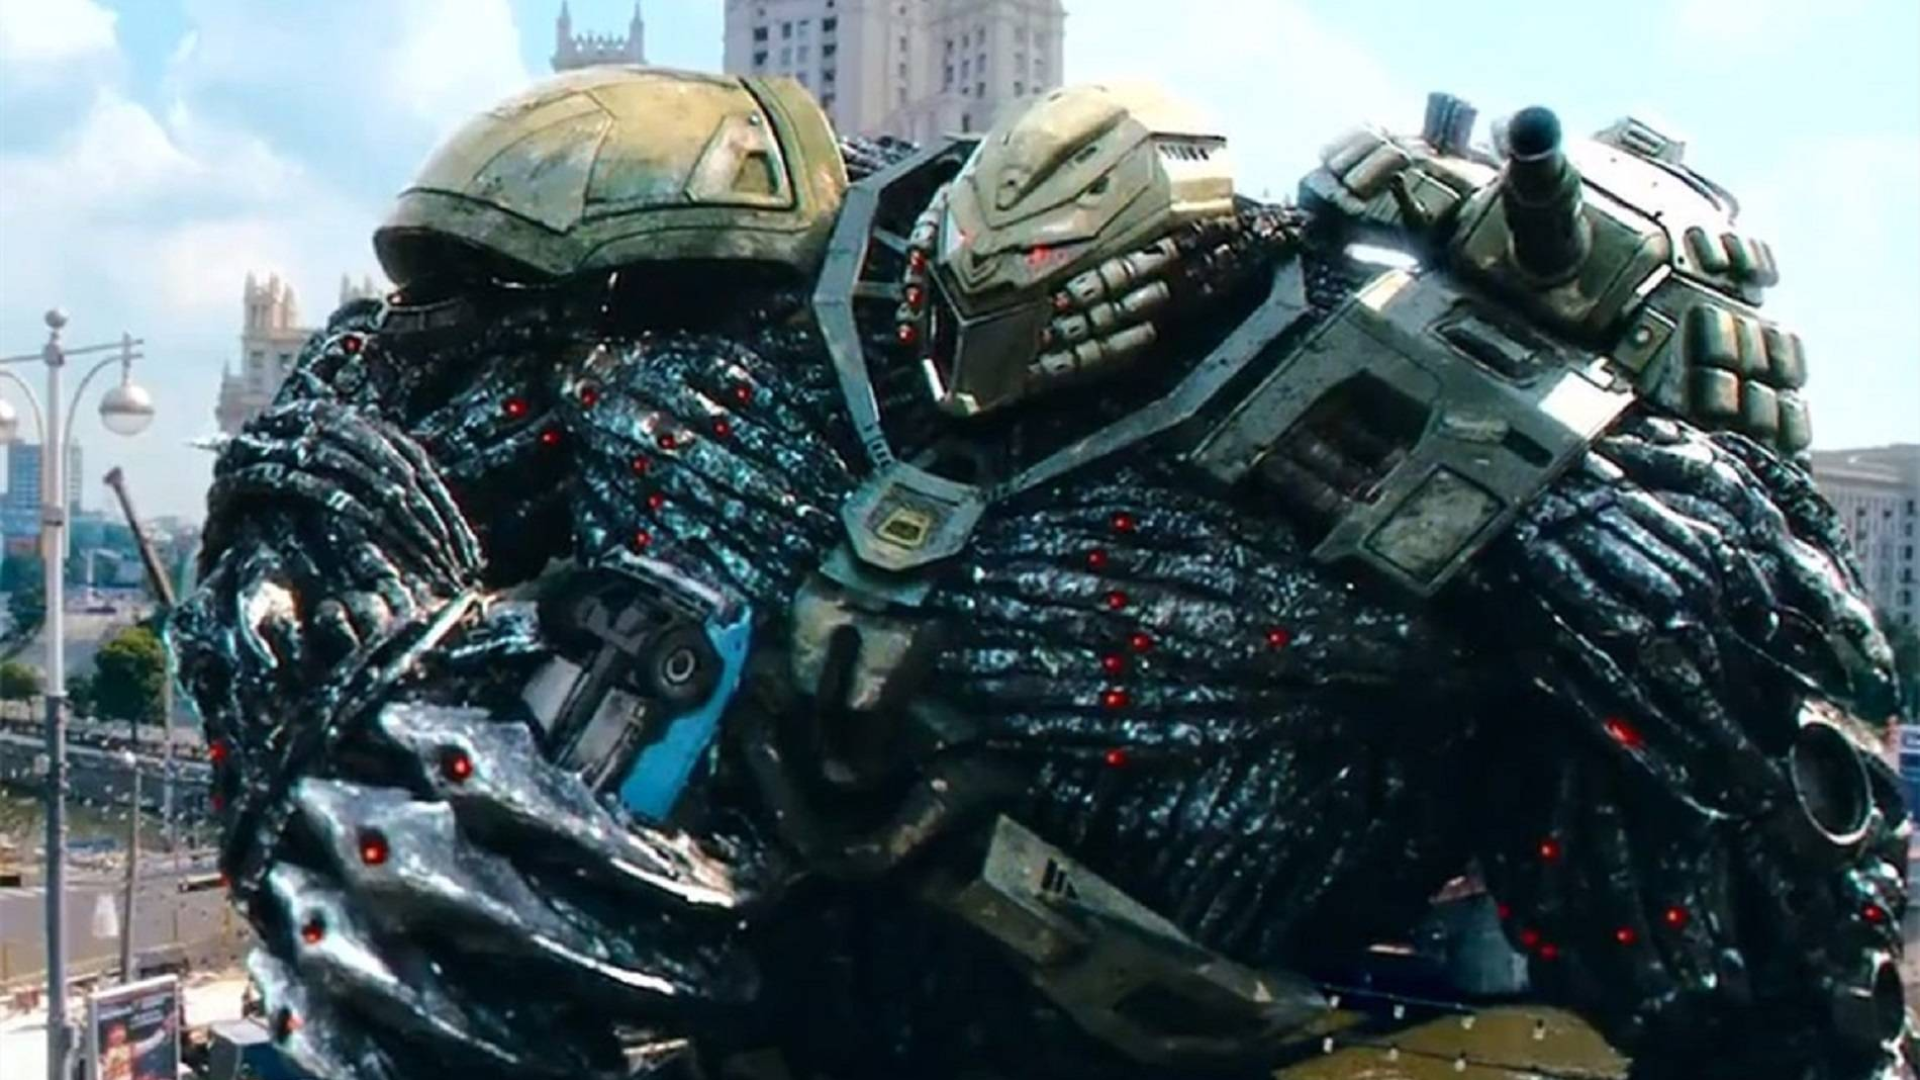 俄式暴力美学战争科幻片,超巨型机器人破坏城市,看的人热血沸腾